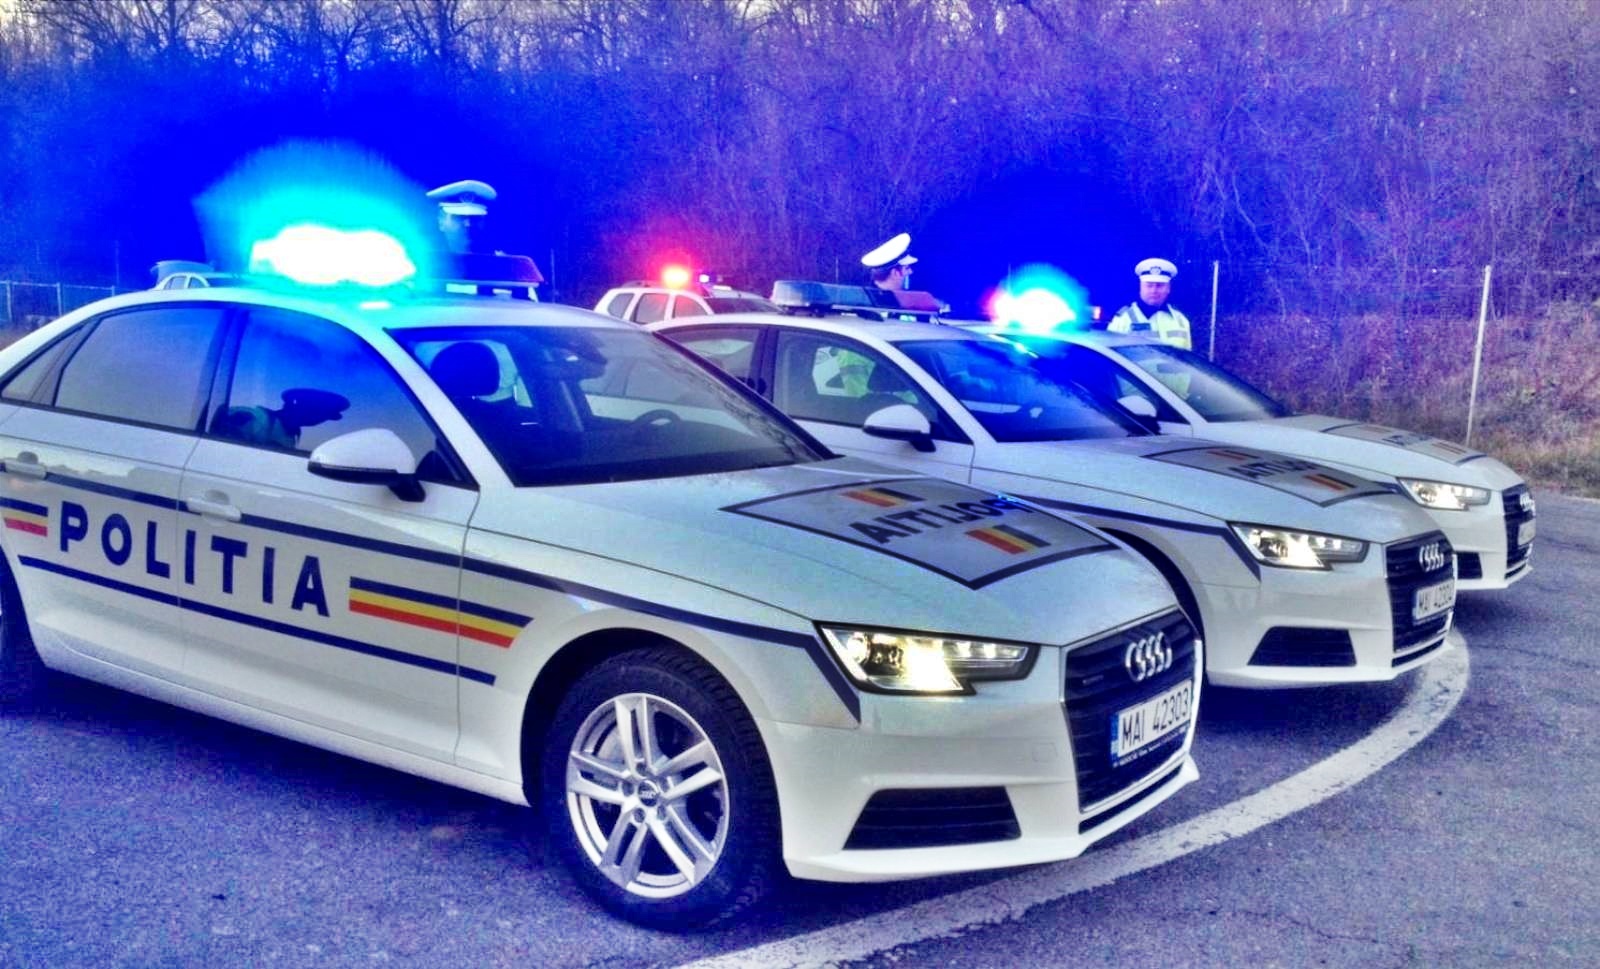 Une voiture de police roumaine conduisant à 253 km/h capturée par un radar